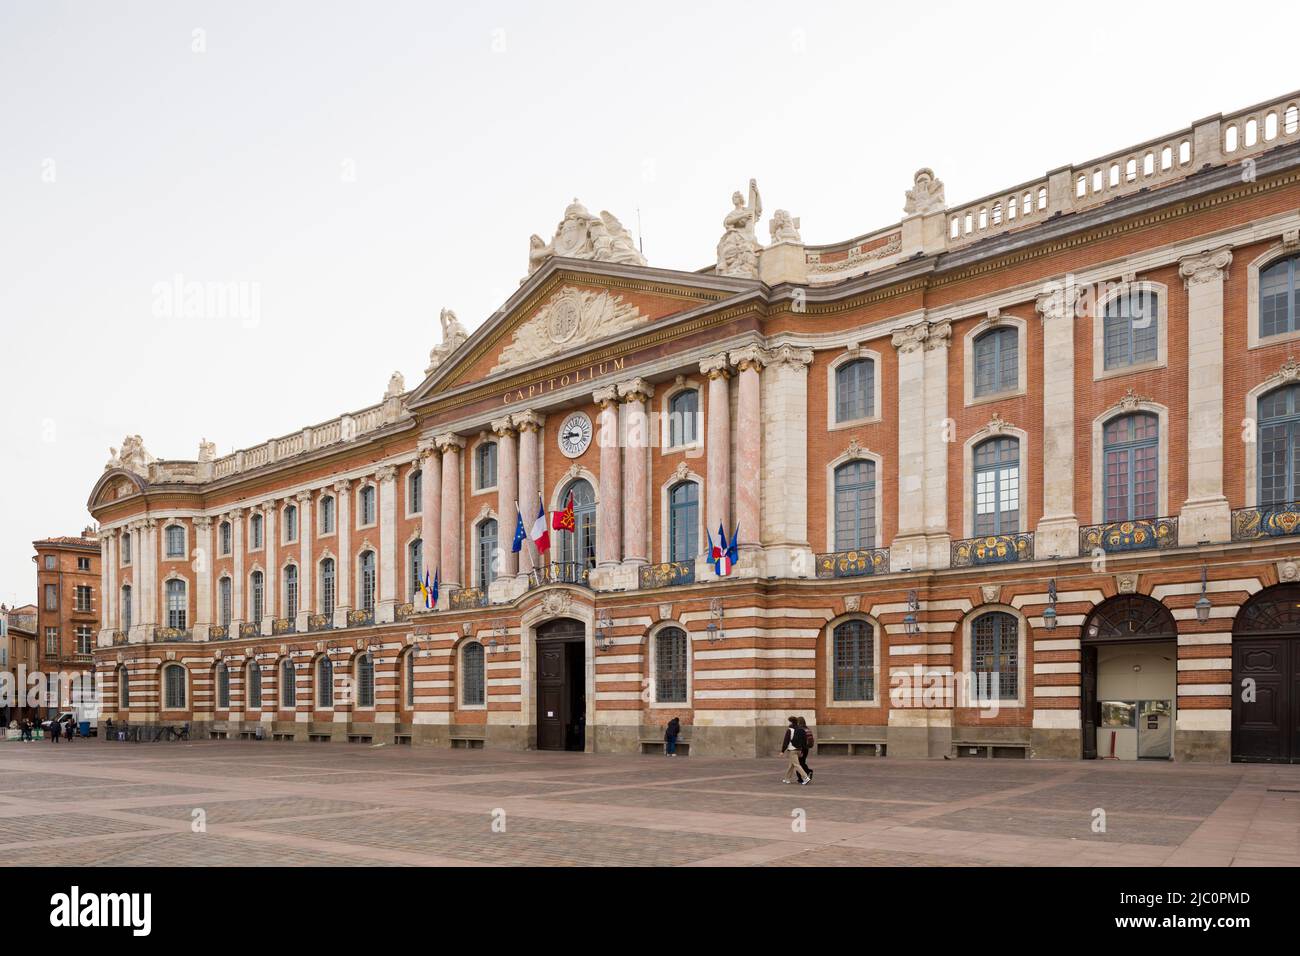 Das Capitole de Toulouse (Hotel de Ville oder Rathaus), Frankreich. Hauptfassade von 1750 von Guillaume Cammas. Stockfoto